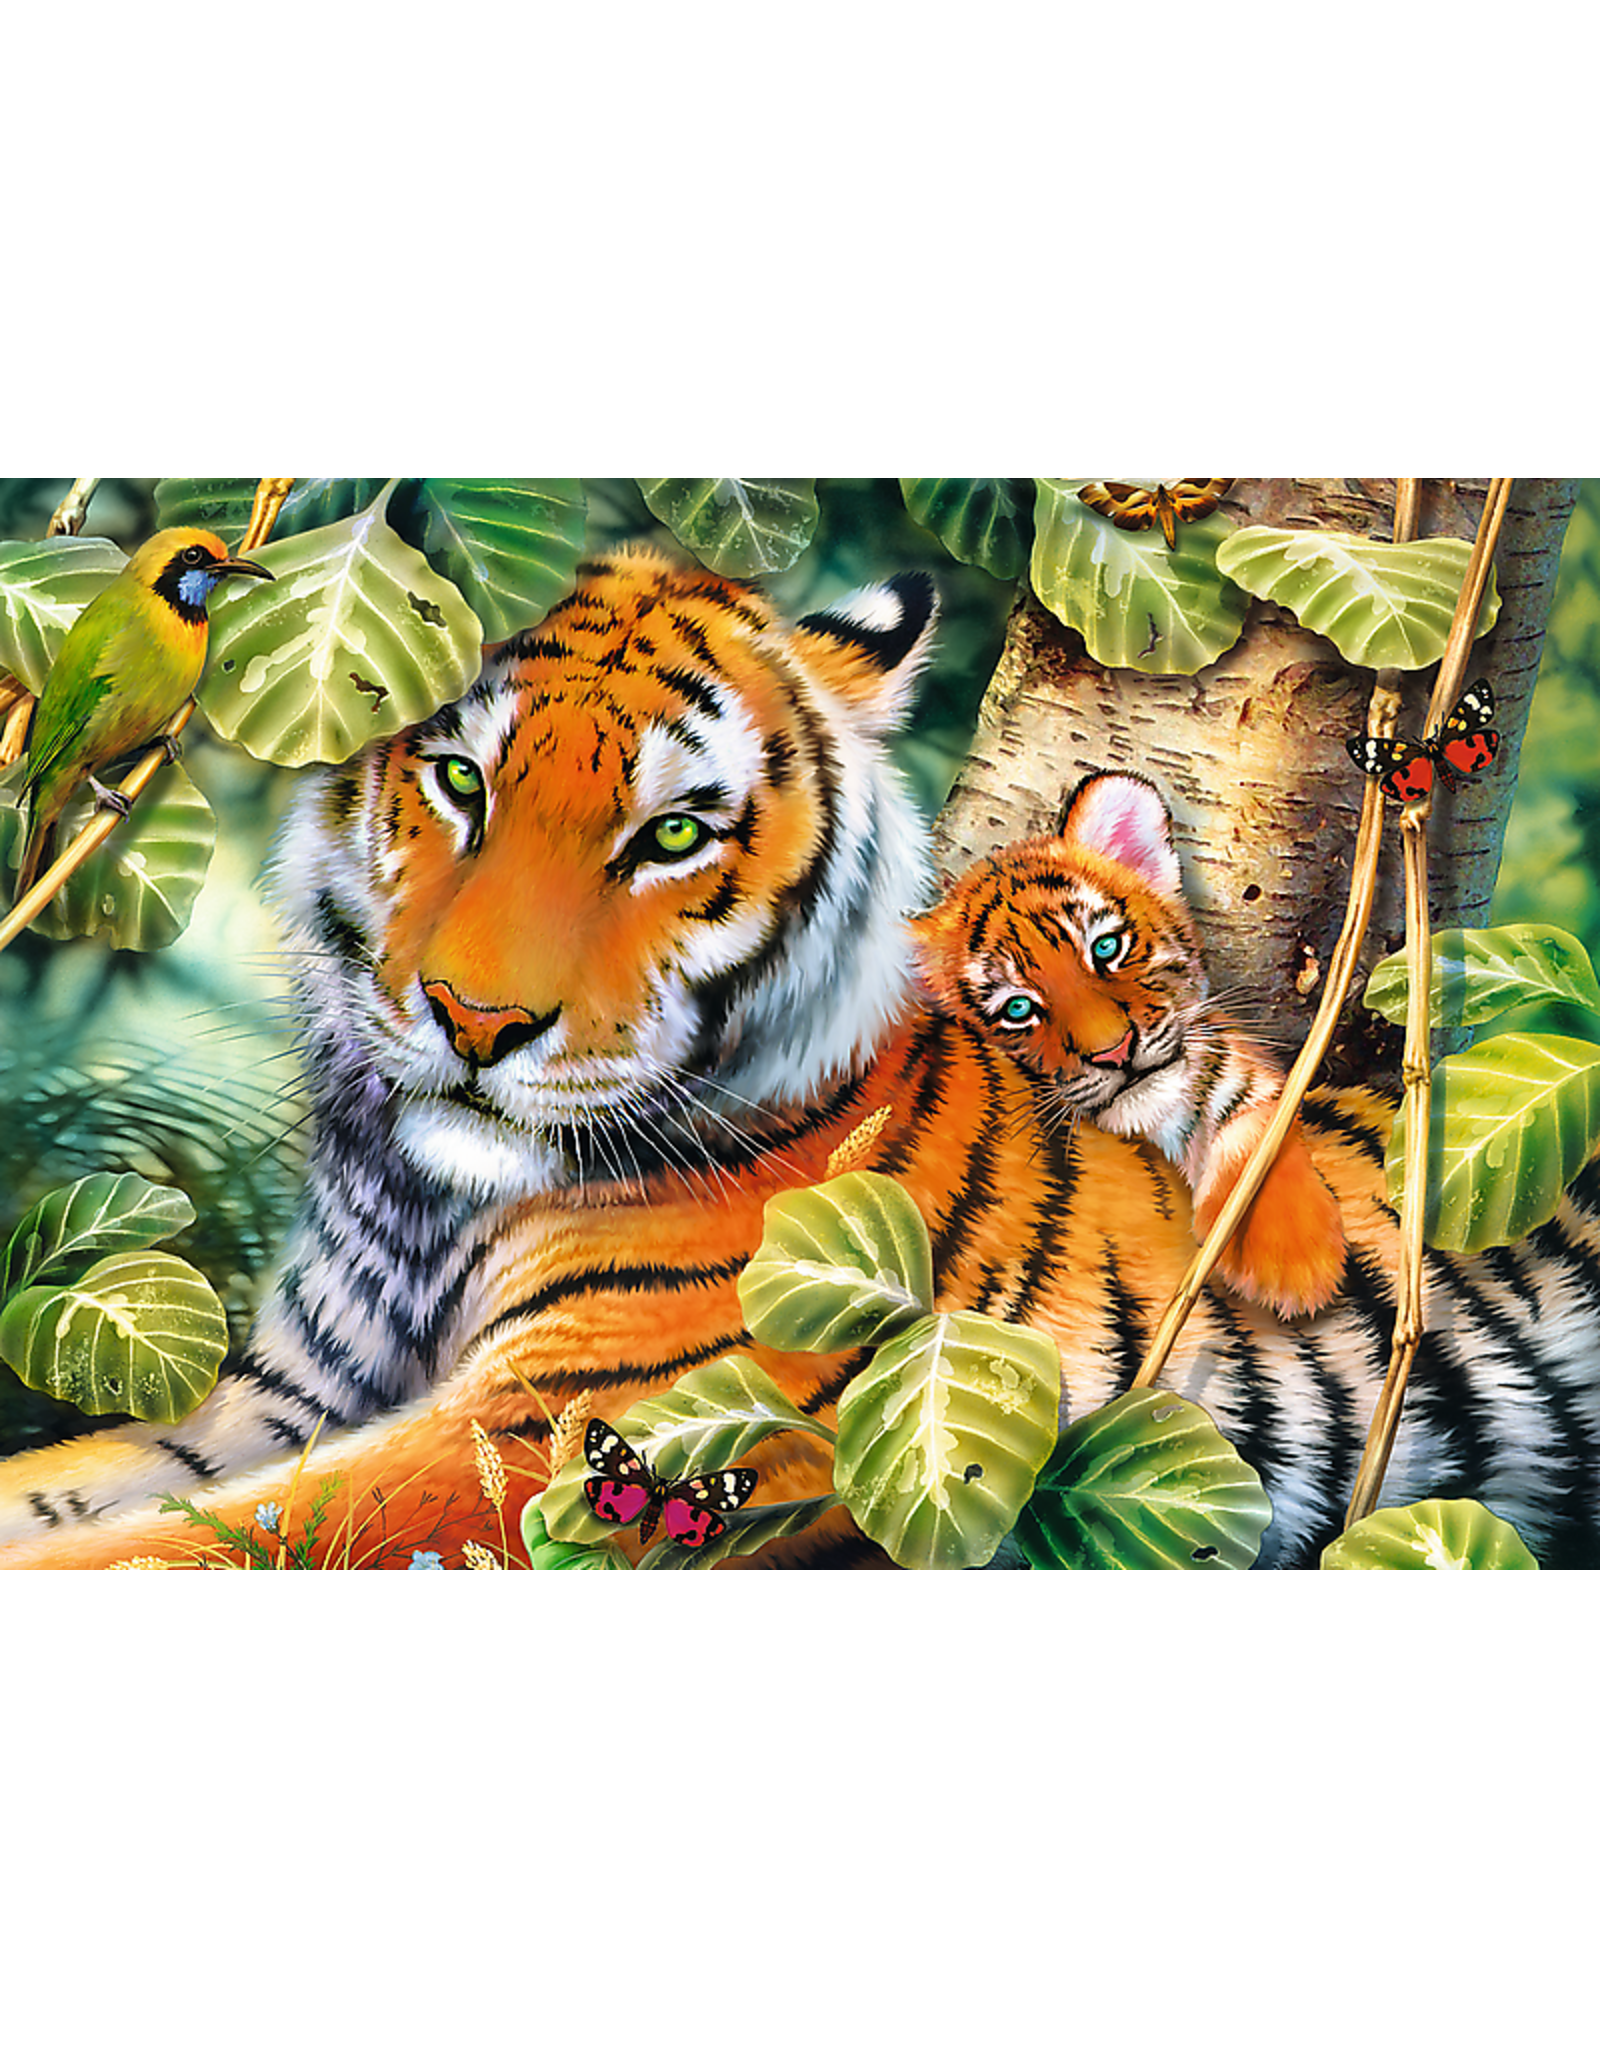 Trefl Deux Tigres